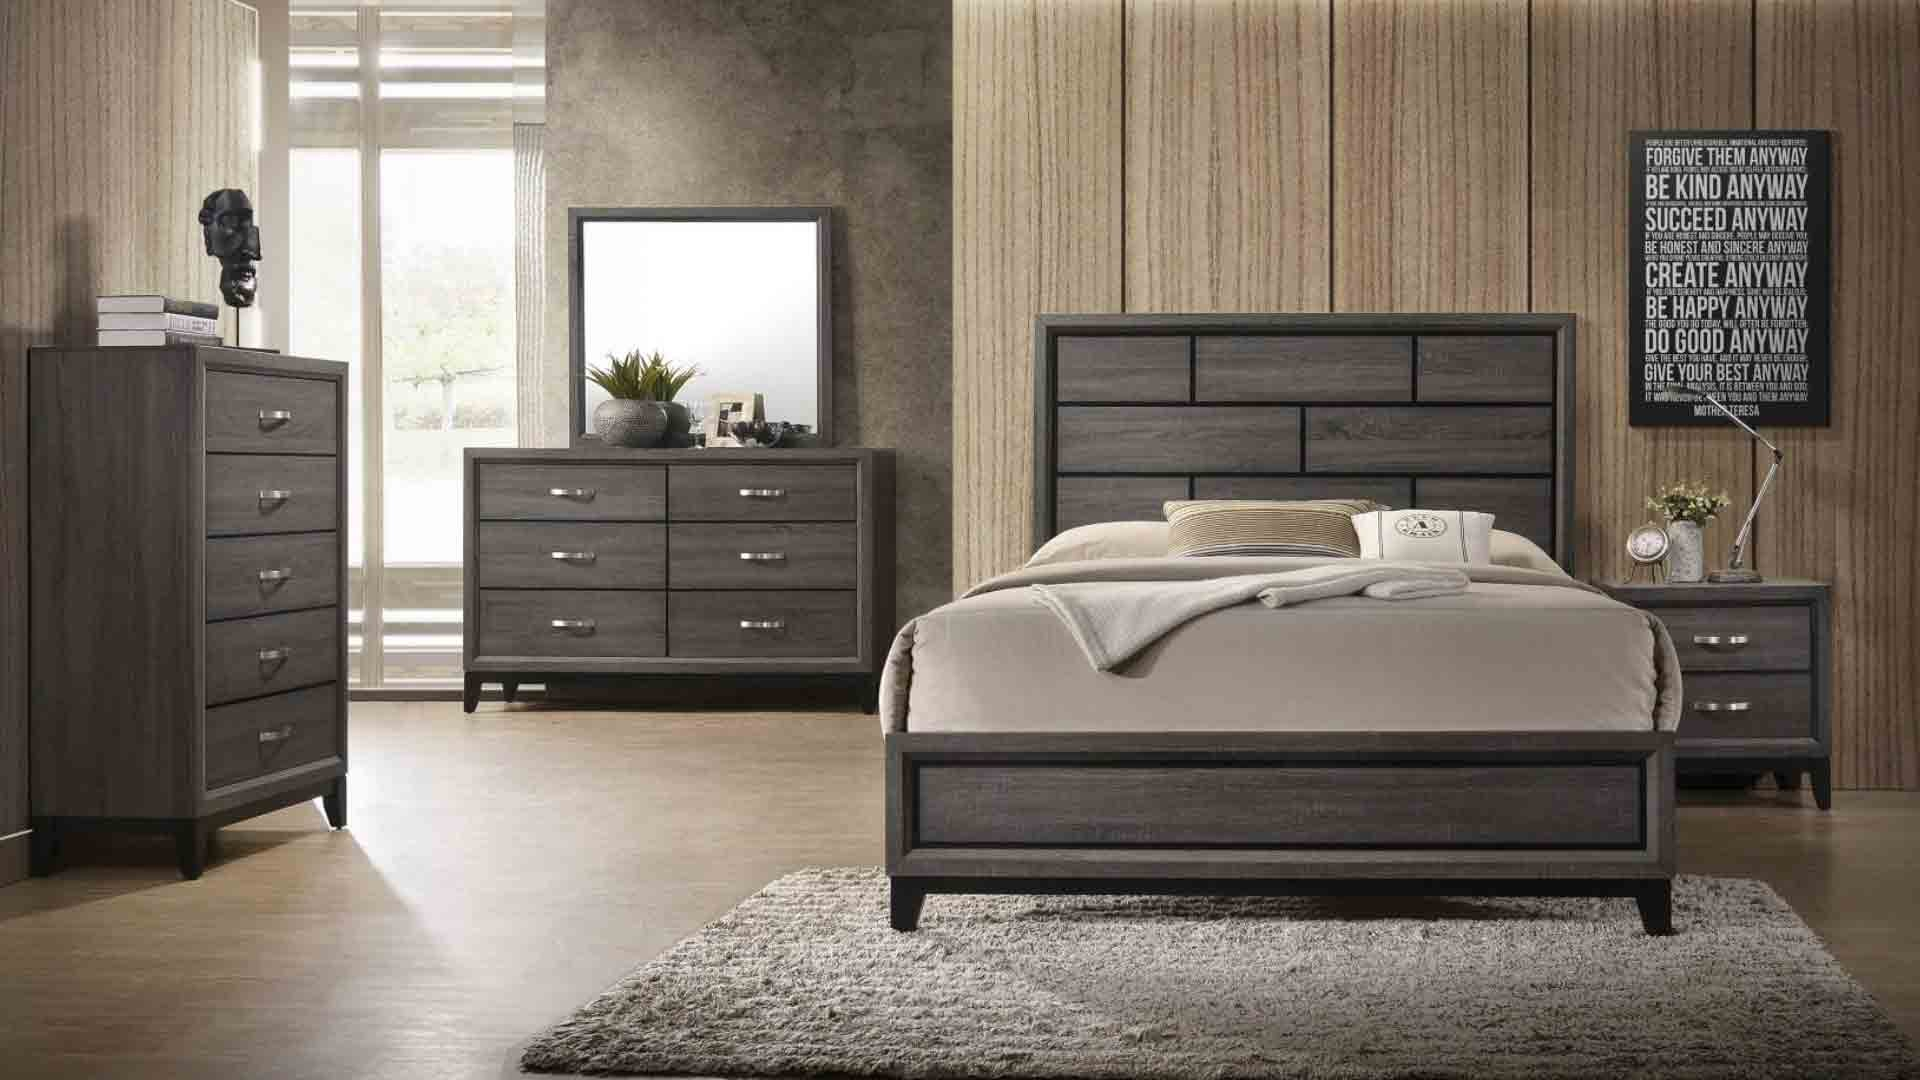 complete bedroom furniture design